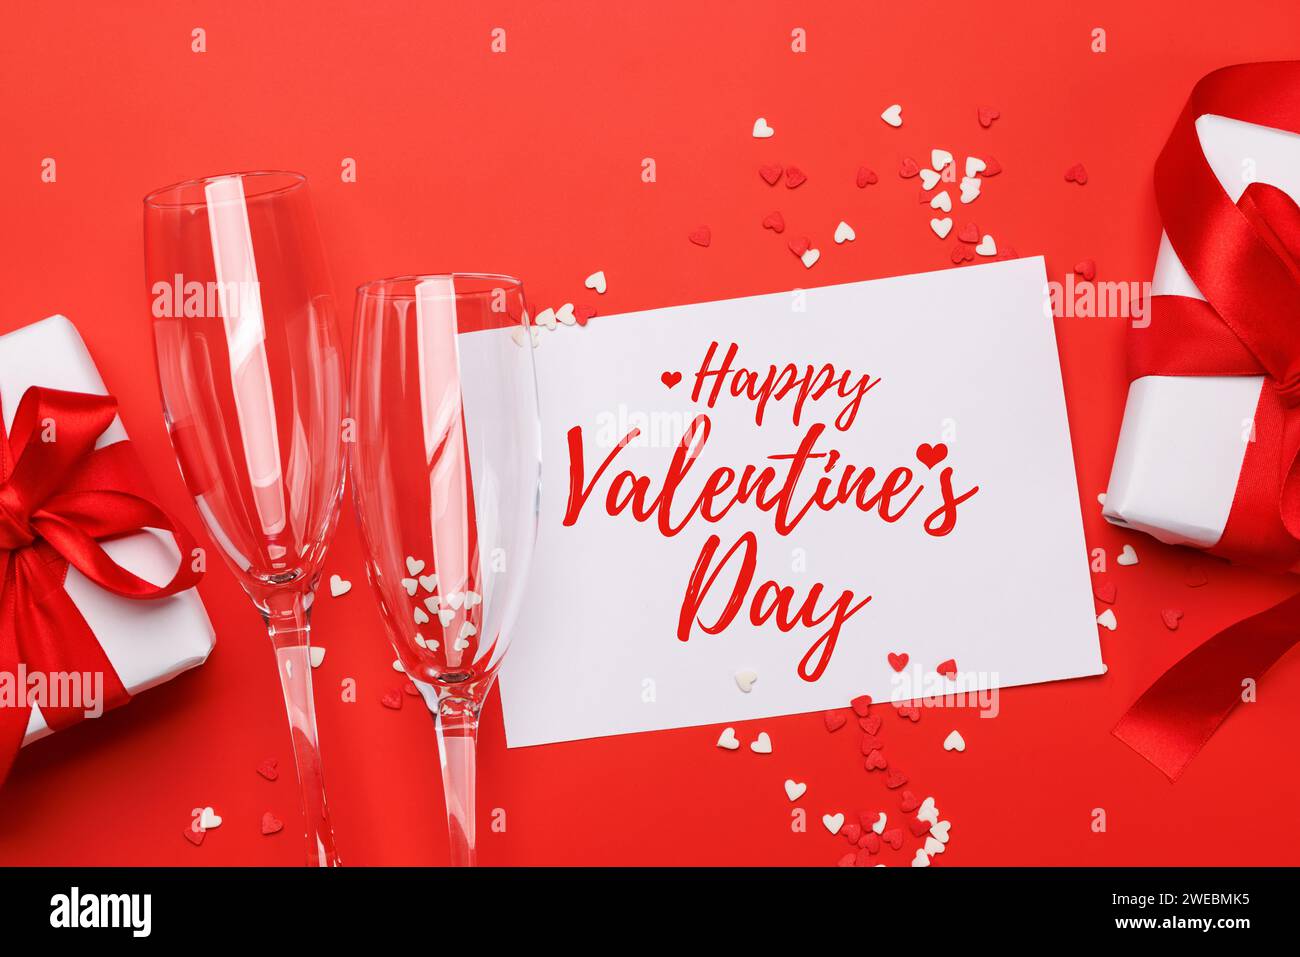 Champagner und Geschenk: Feierliches Duo auf rotem Hintergrund mit Textfeld. Grußkarte zum Valentinstag Stockfoto